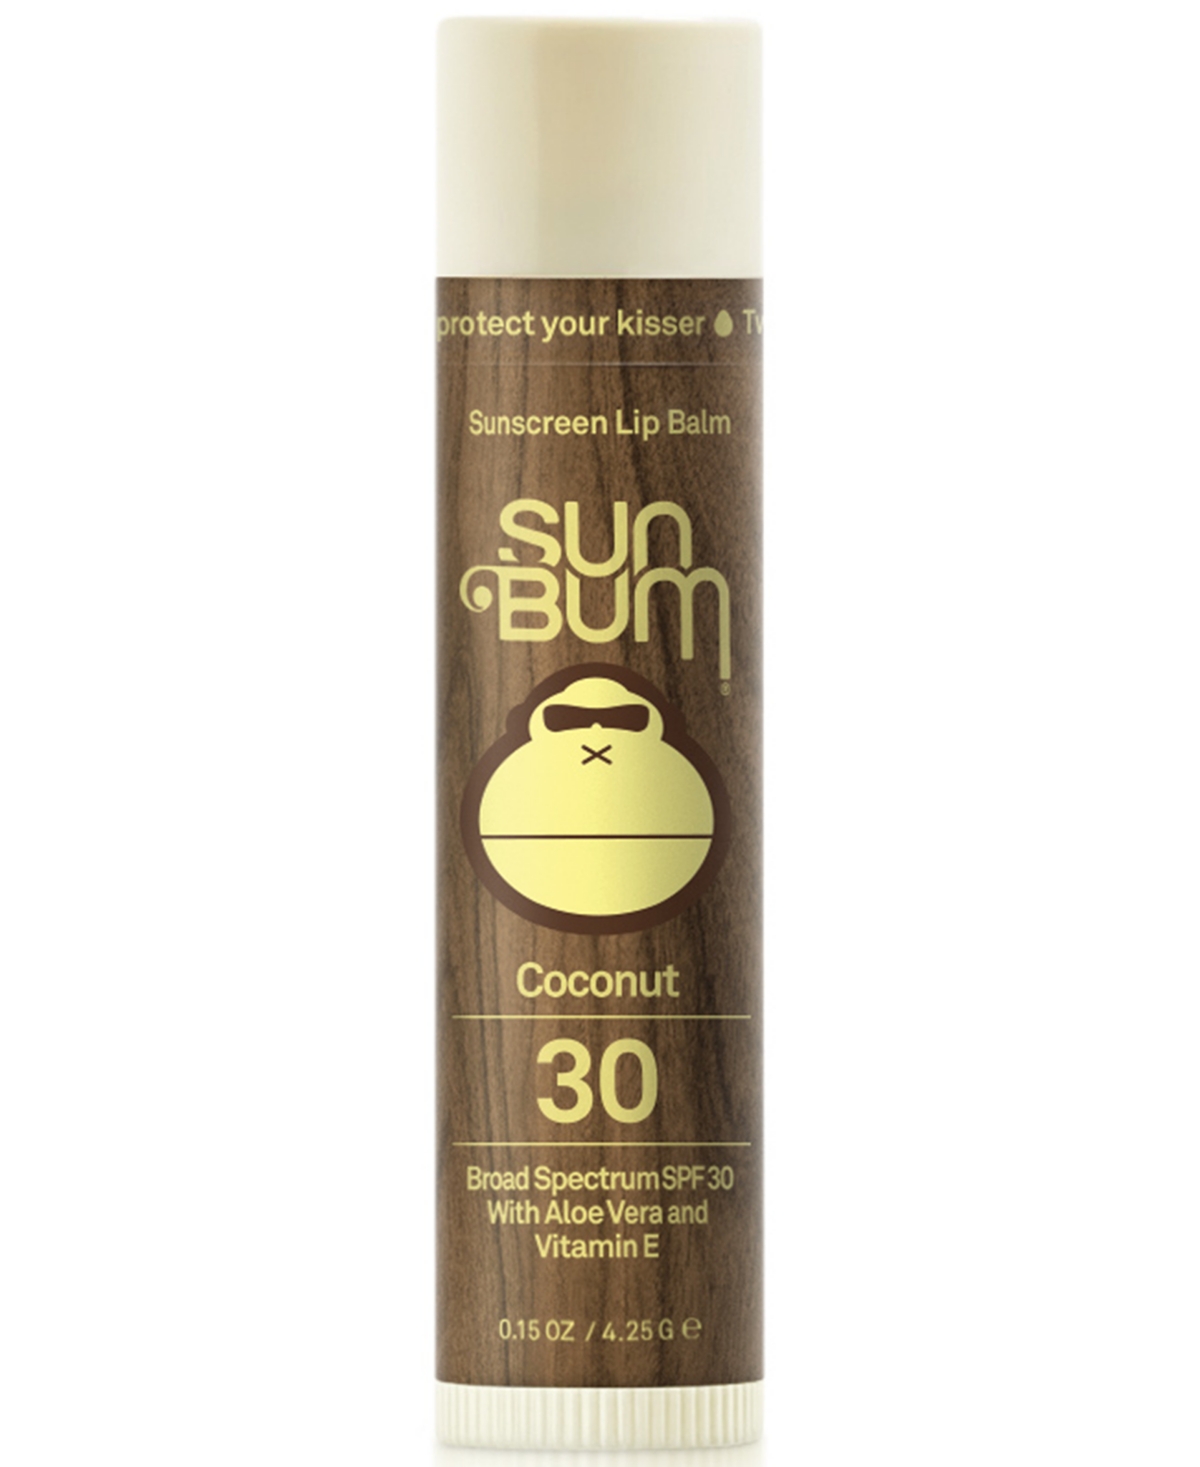 Sunscreen Lip Balm - Coconut